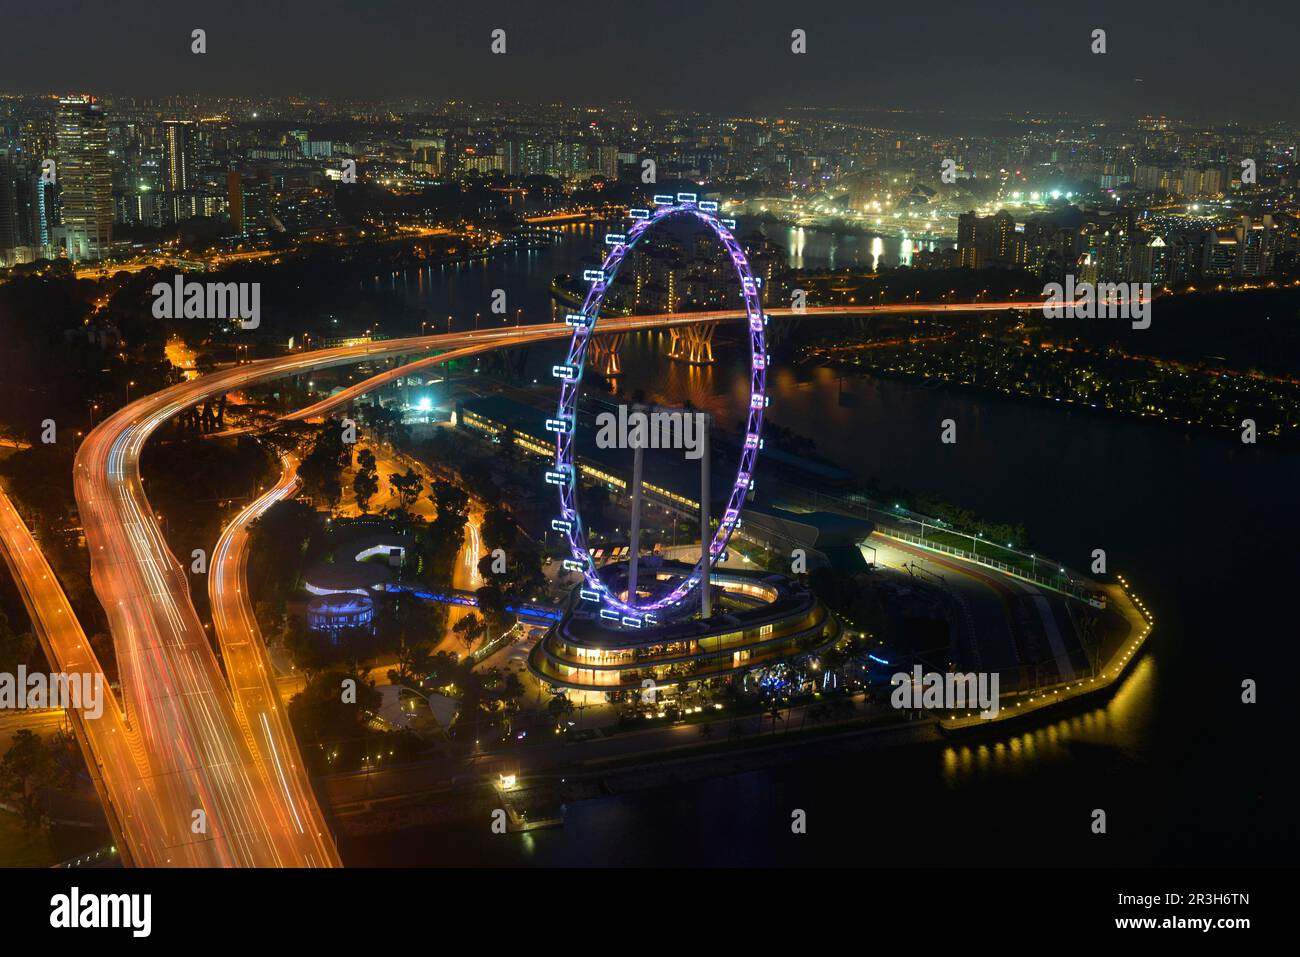 Ruota panoramica, Singapore Flyer, Singapore Foto Stock